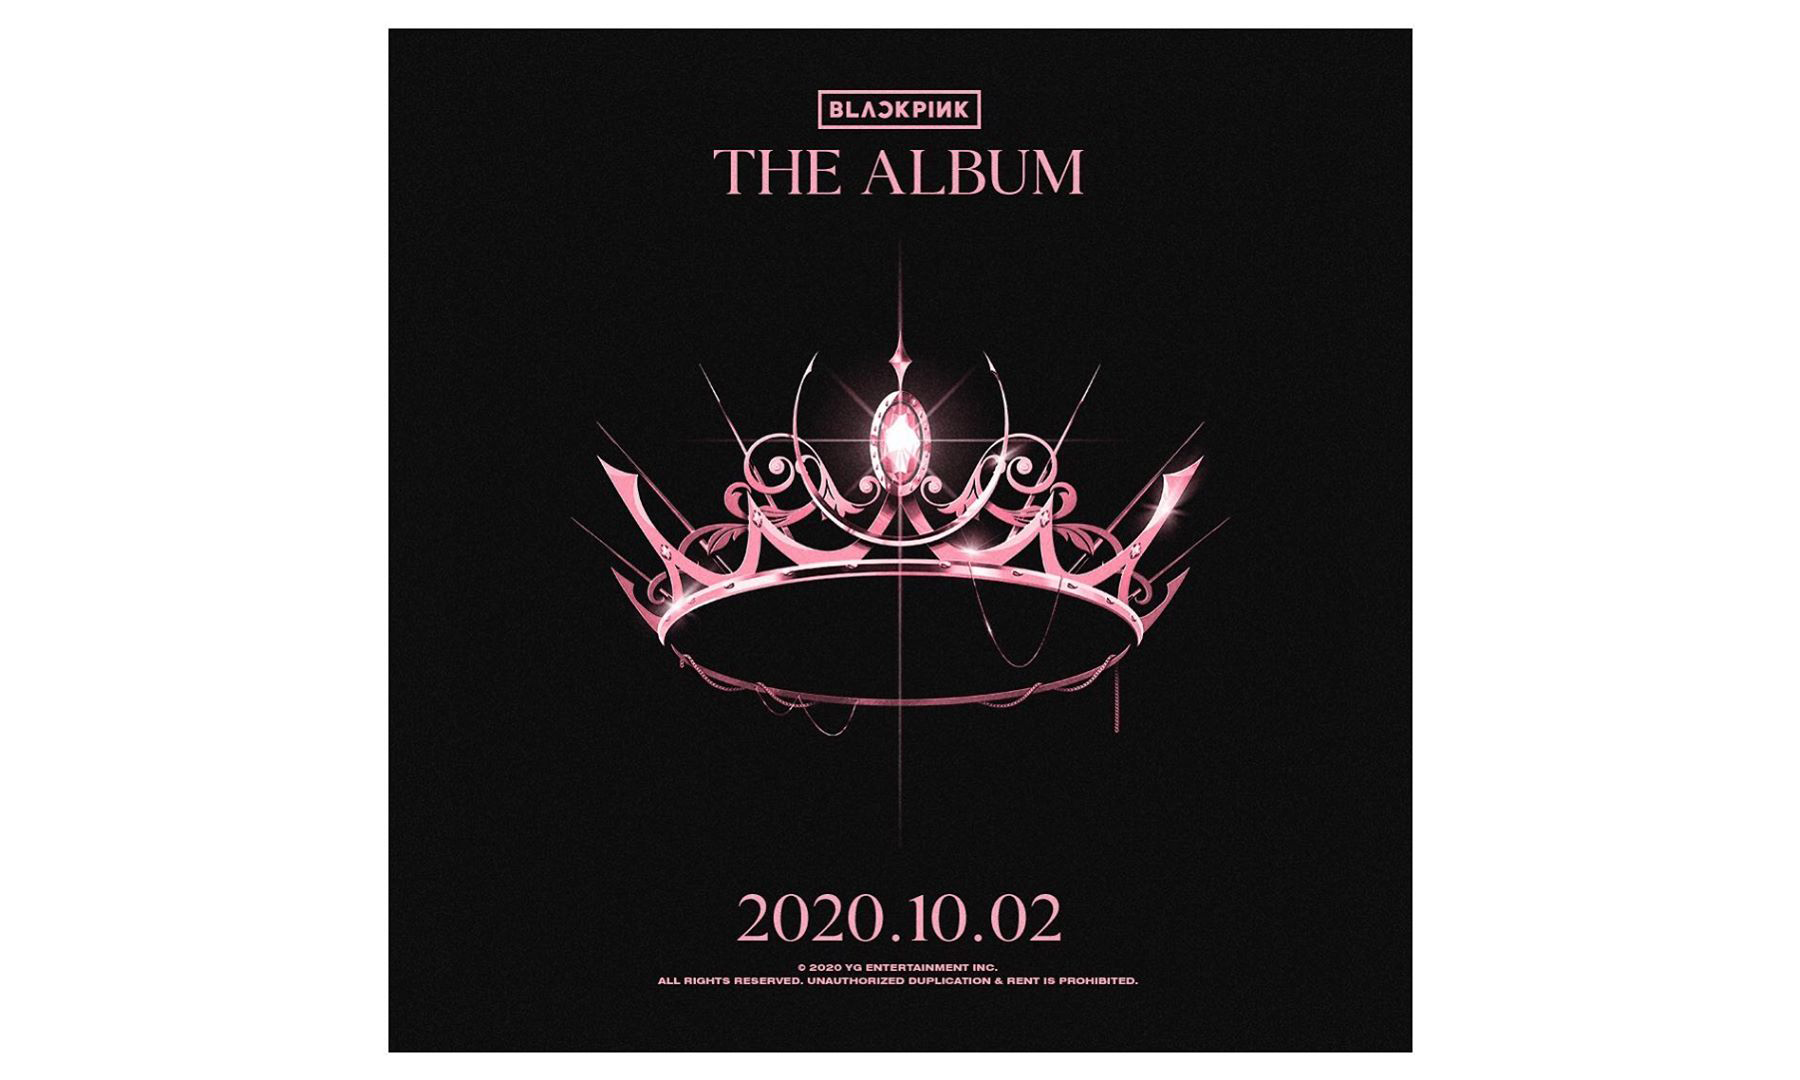 BLACKPINK 发布首张正规专辑预告